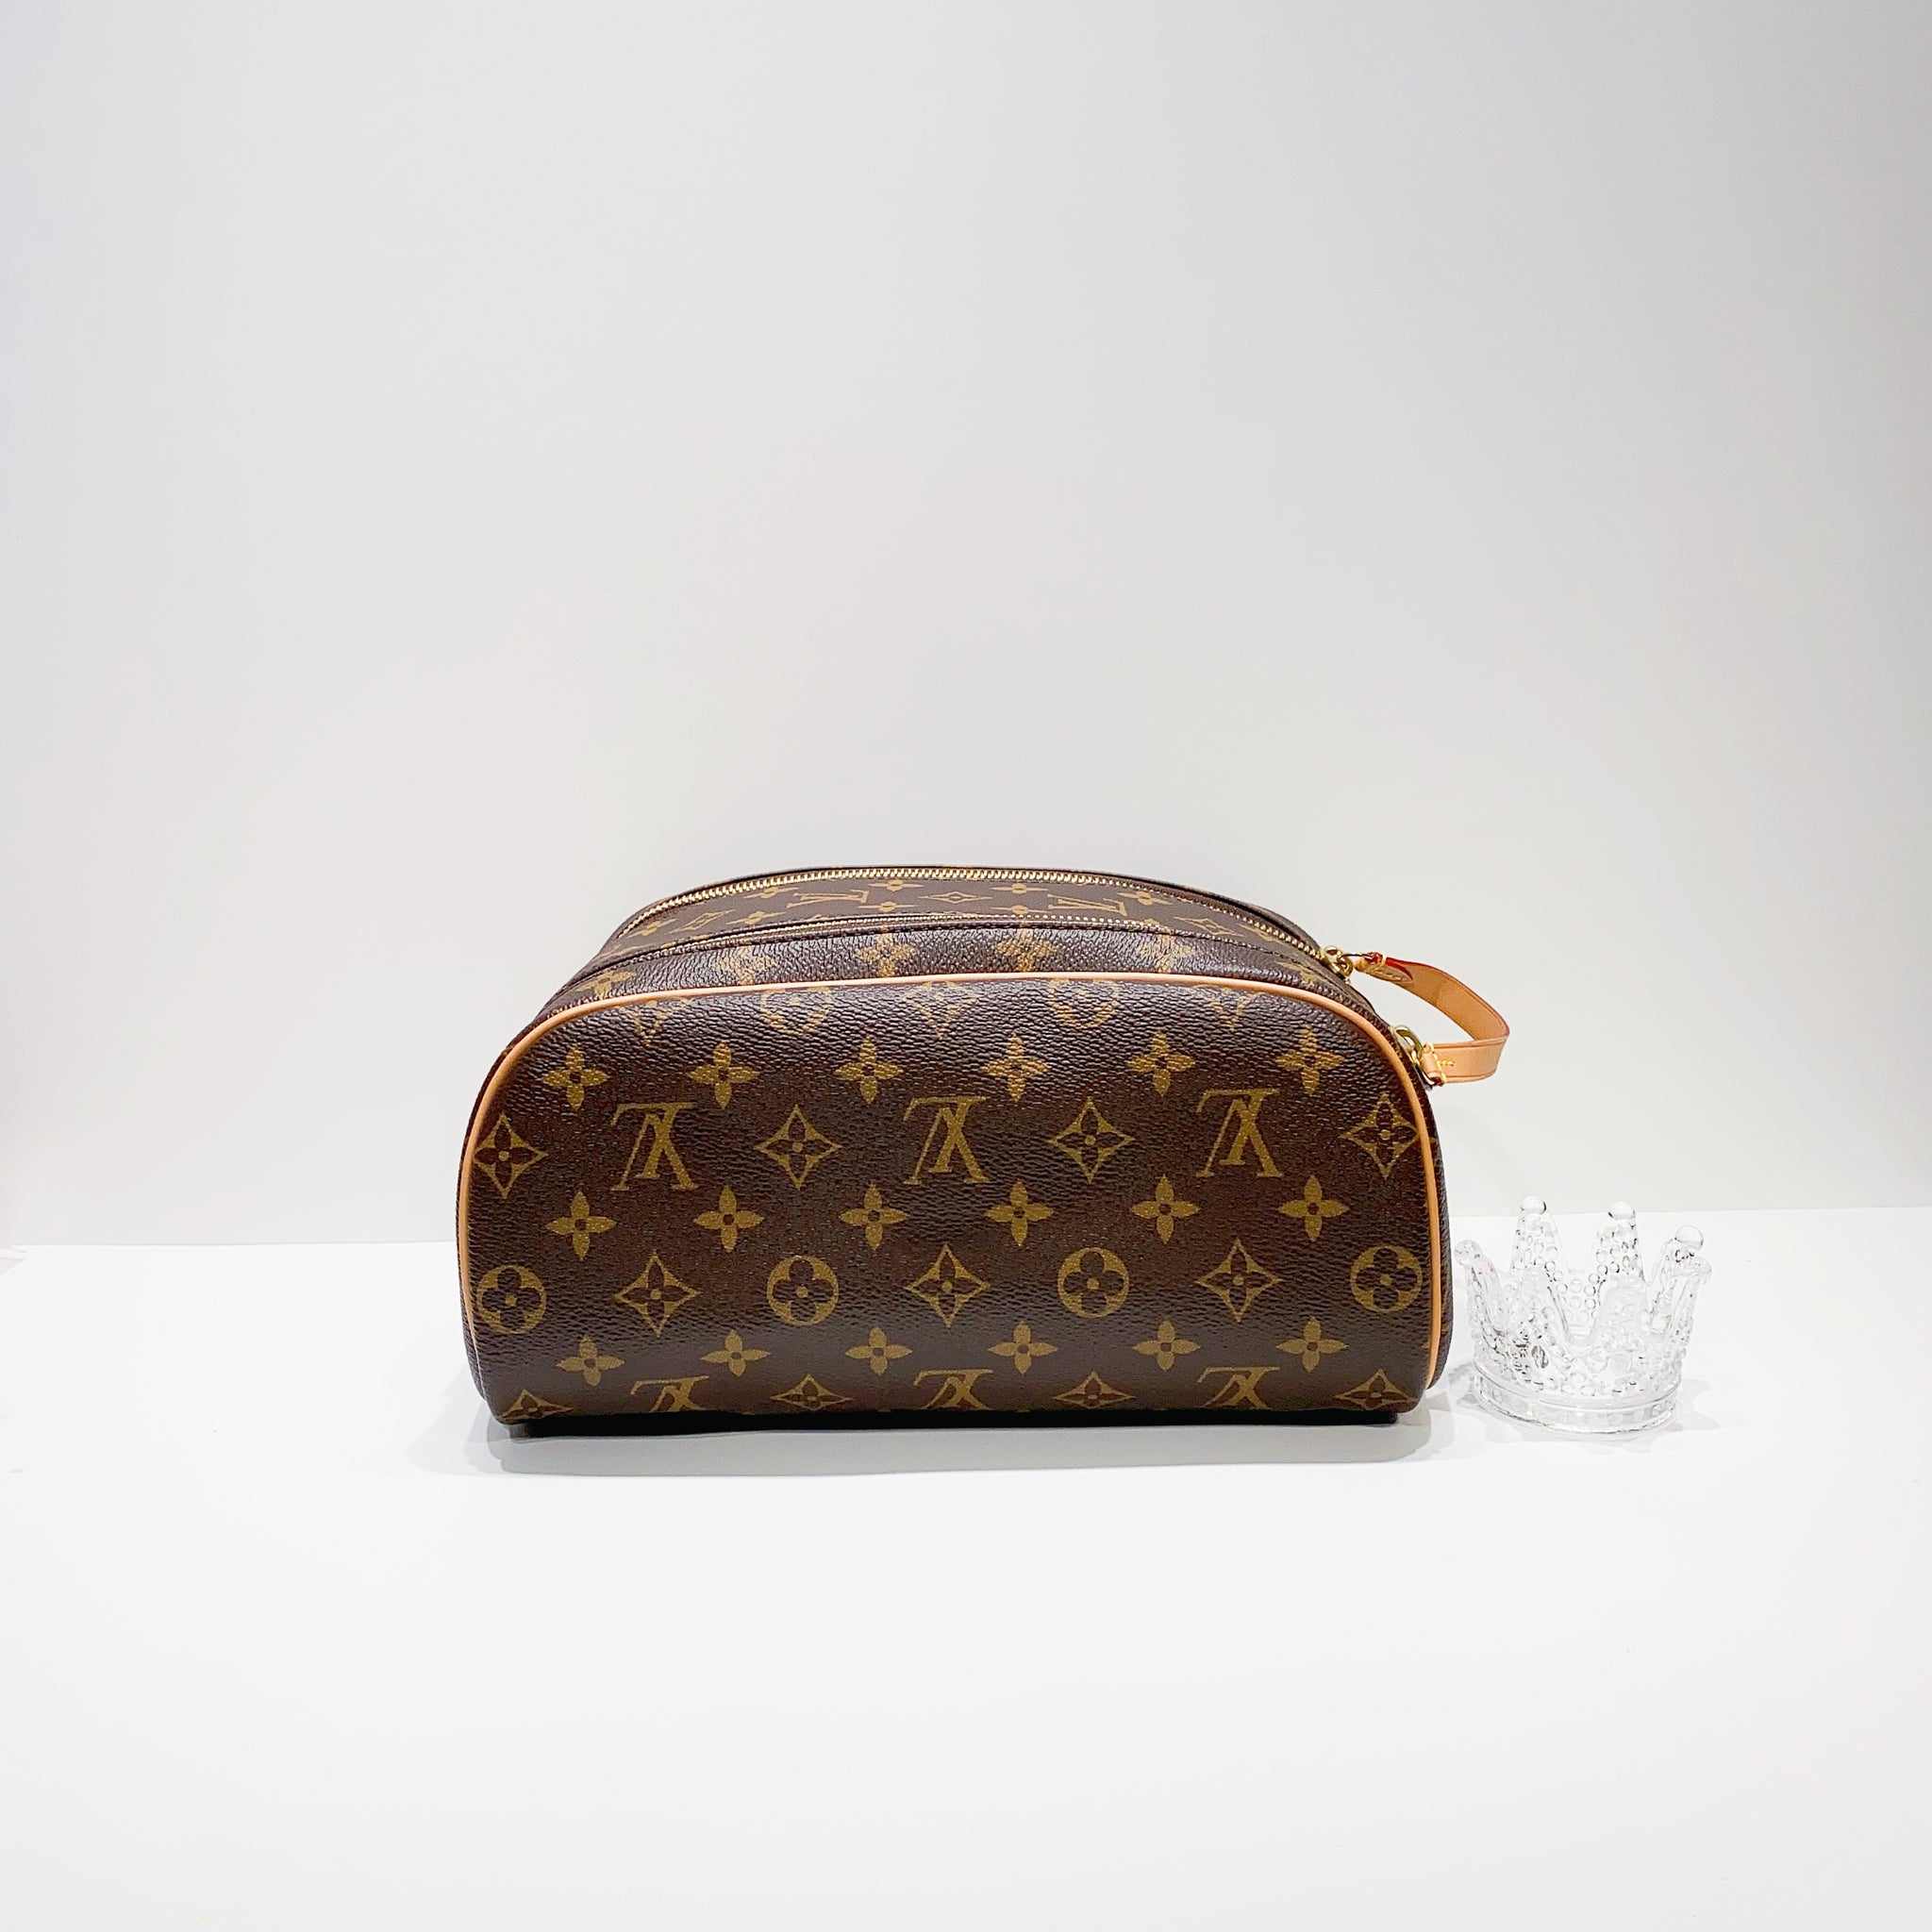 Louis Vuitton King Size Toiletry Bag M47528